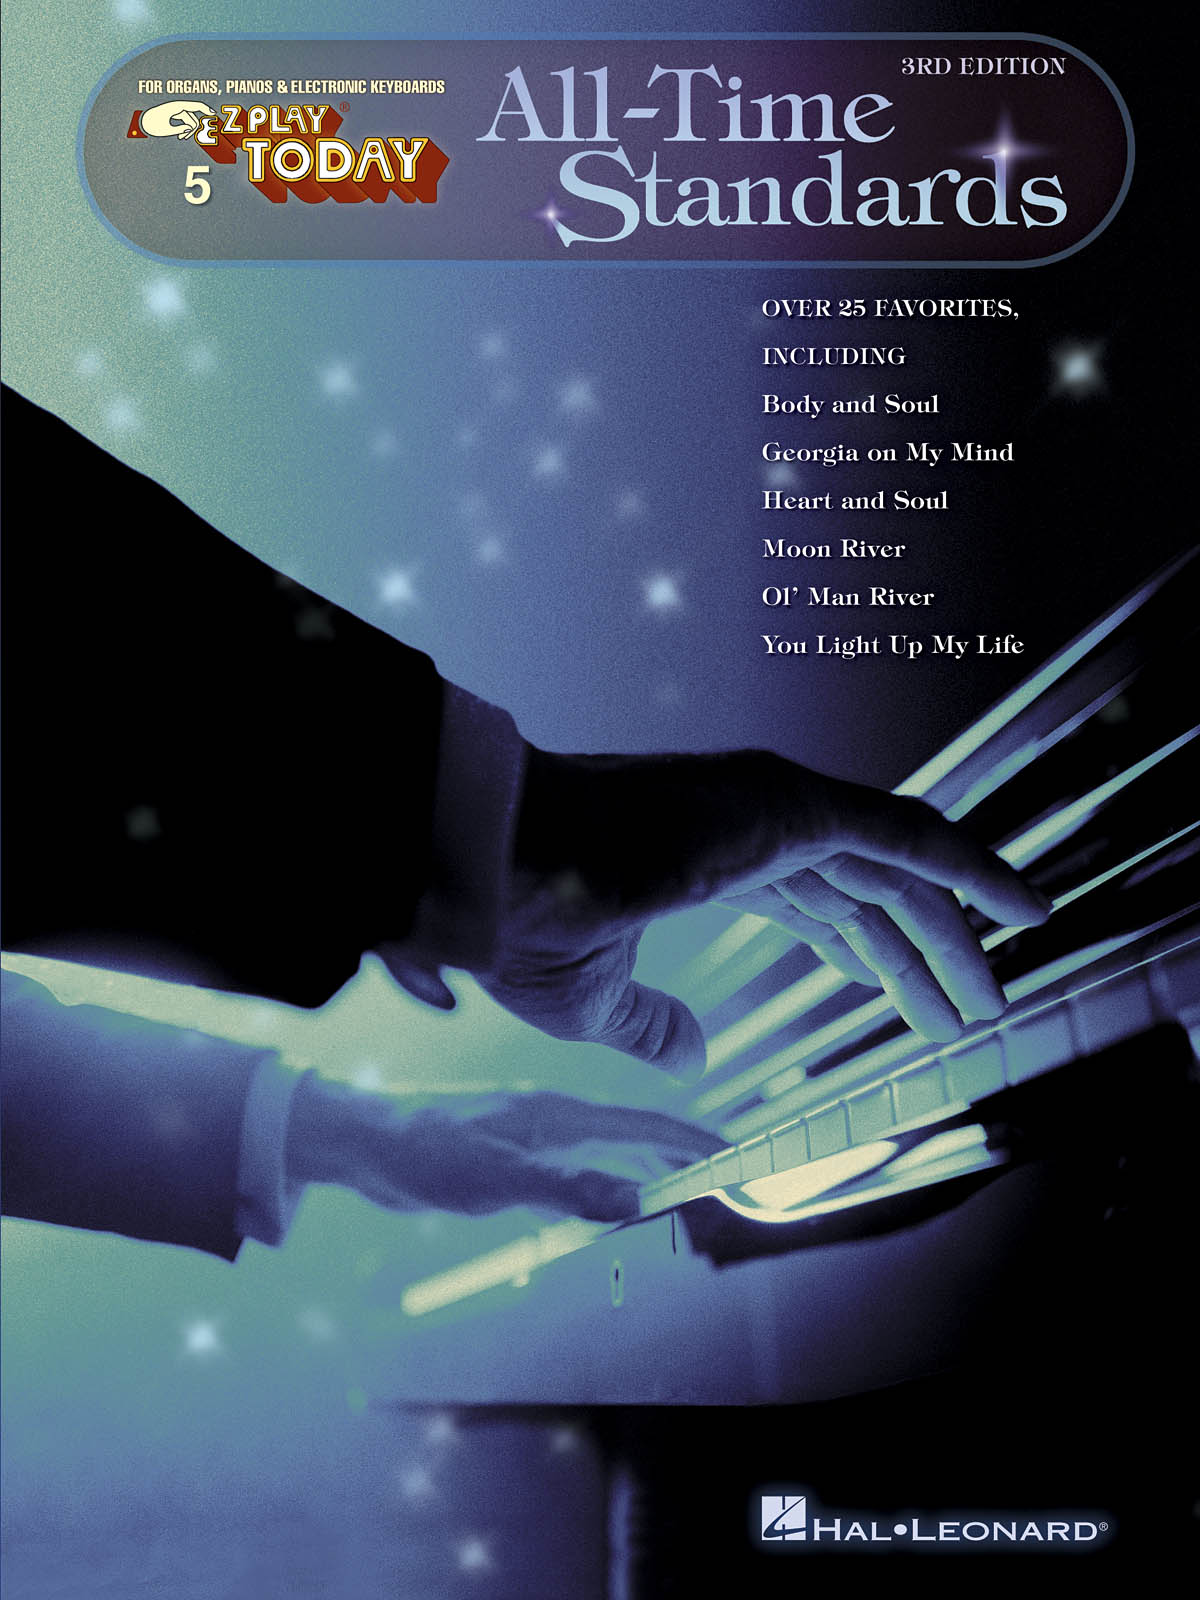 All Time Standards - 2nd Edition - E-Z Play Today Volume 5 - noty pro začátečníky